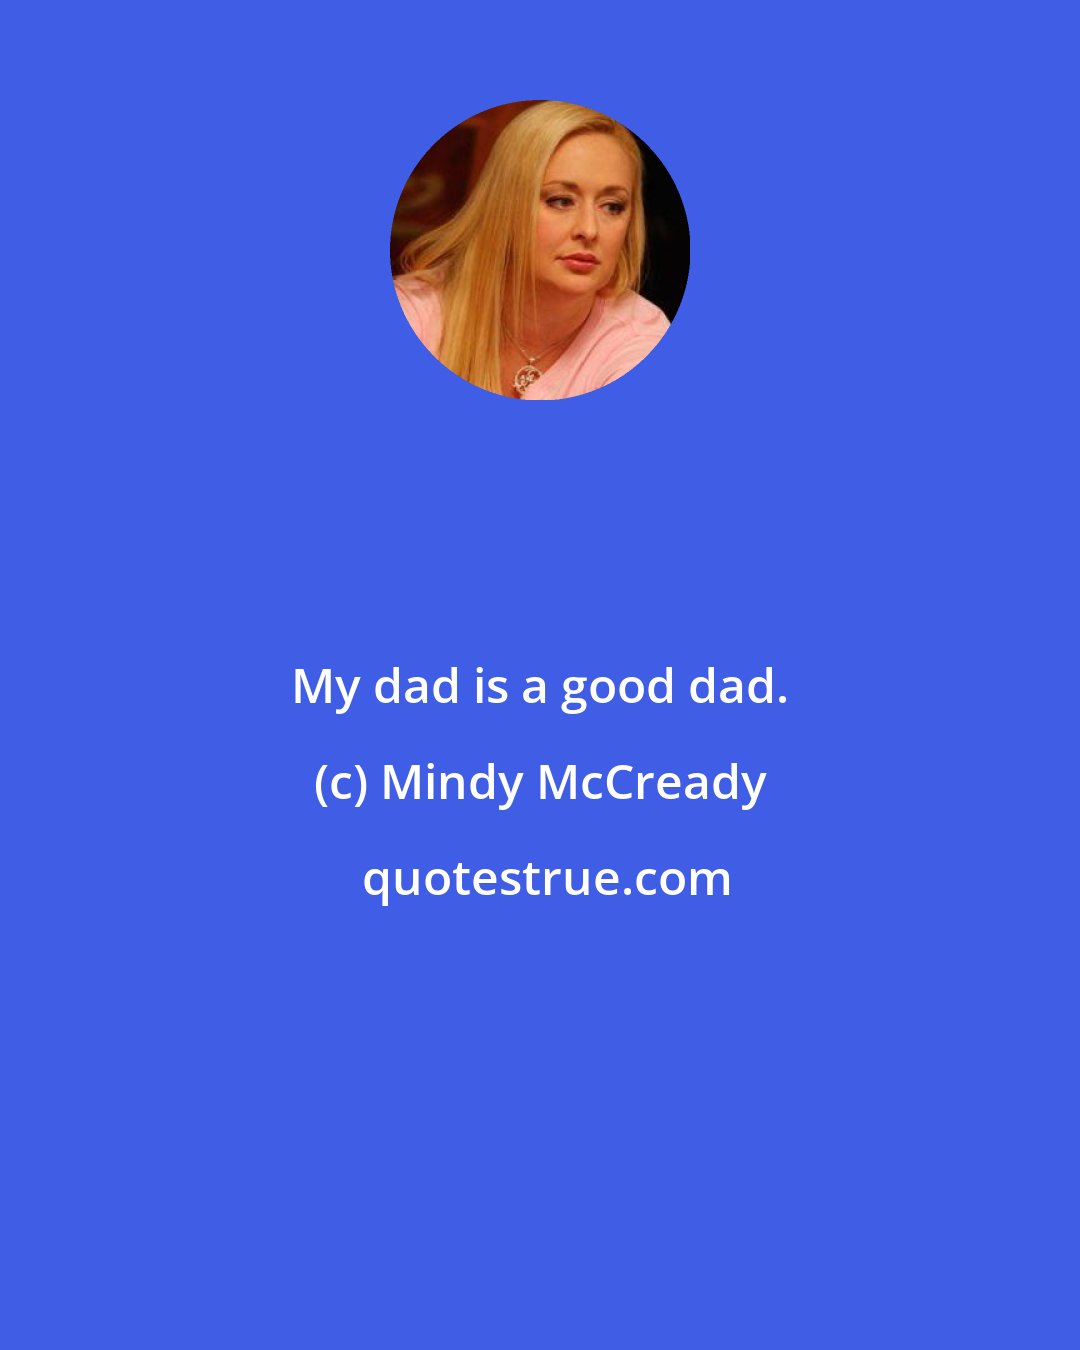 Mindy McCready: My dad is a good dad.